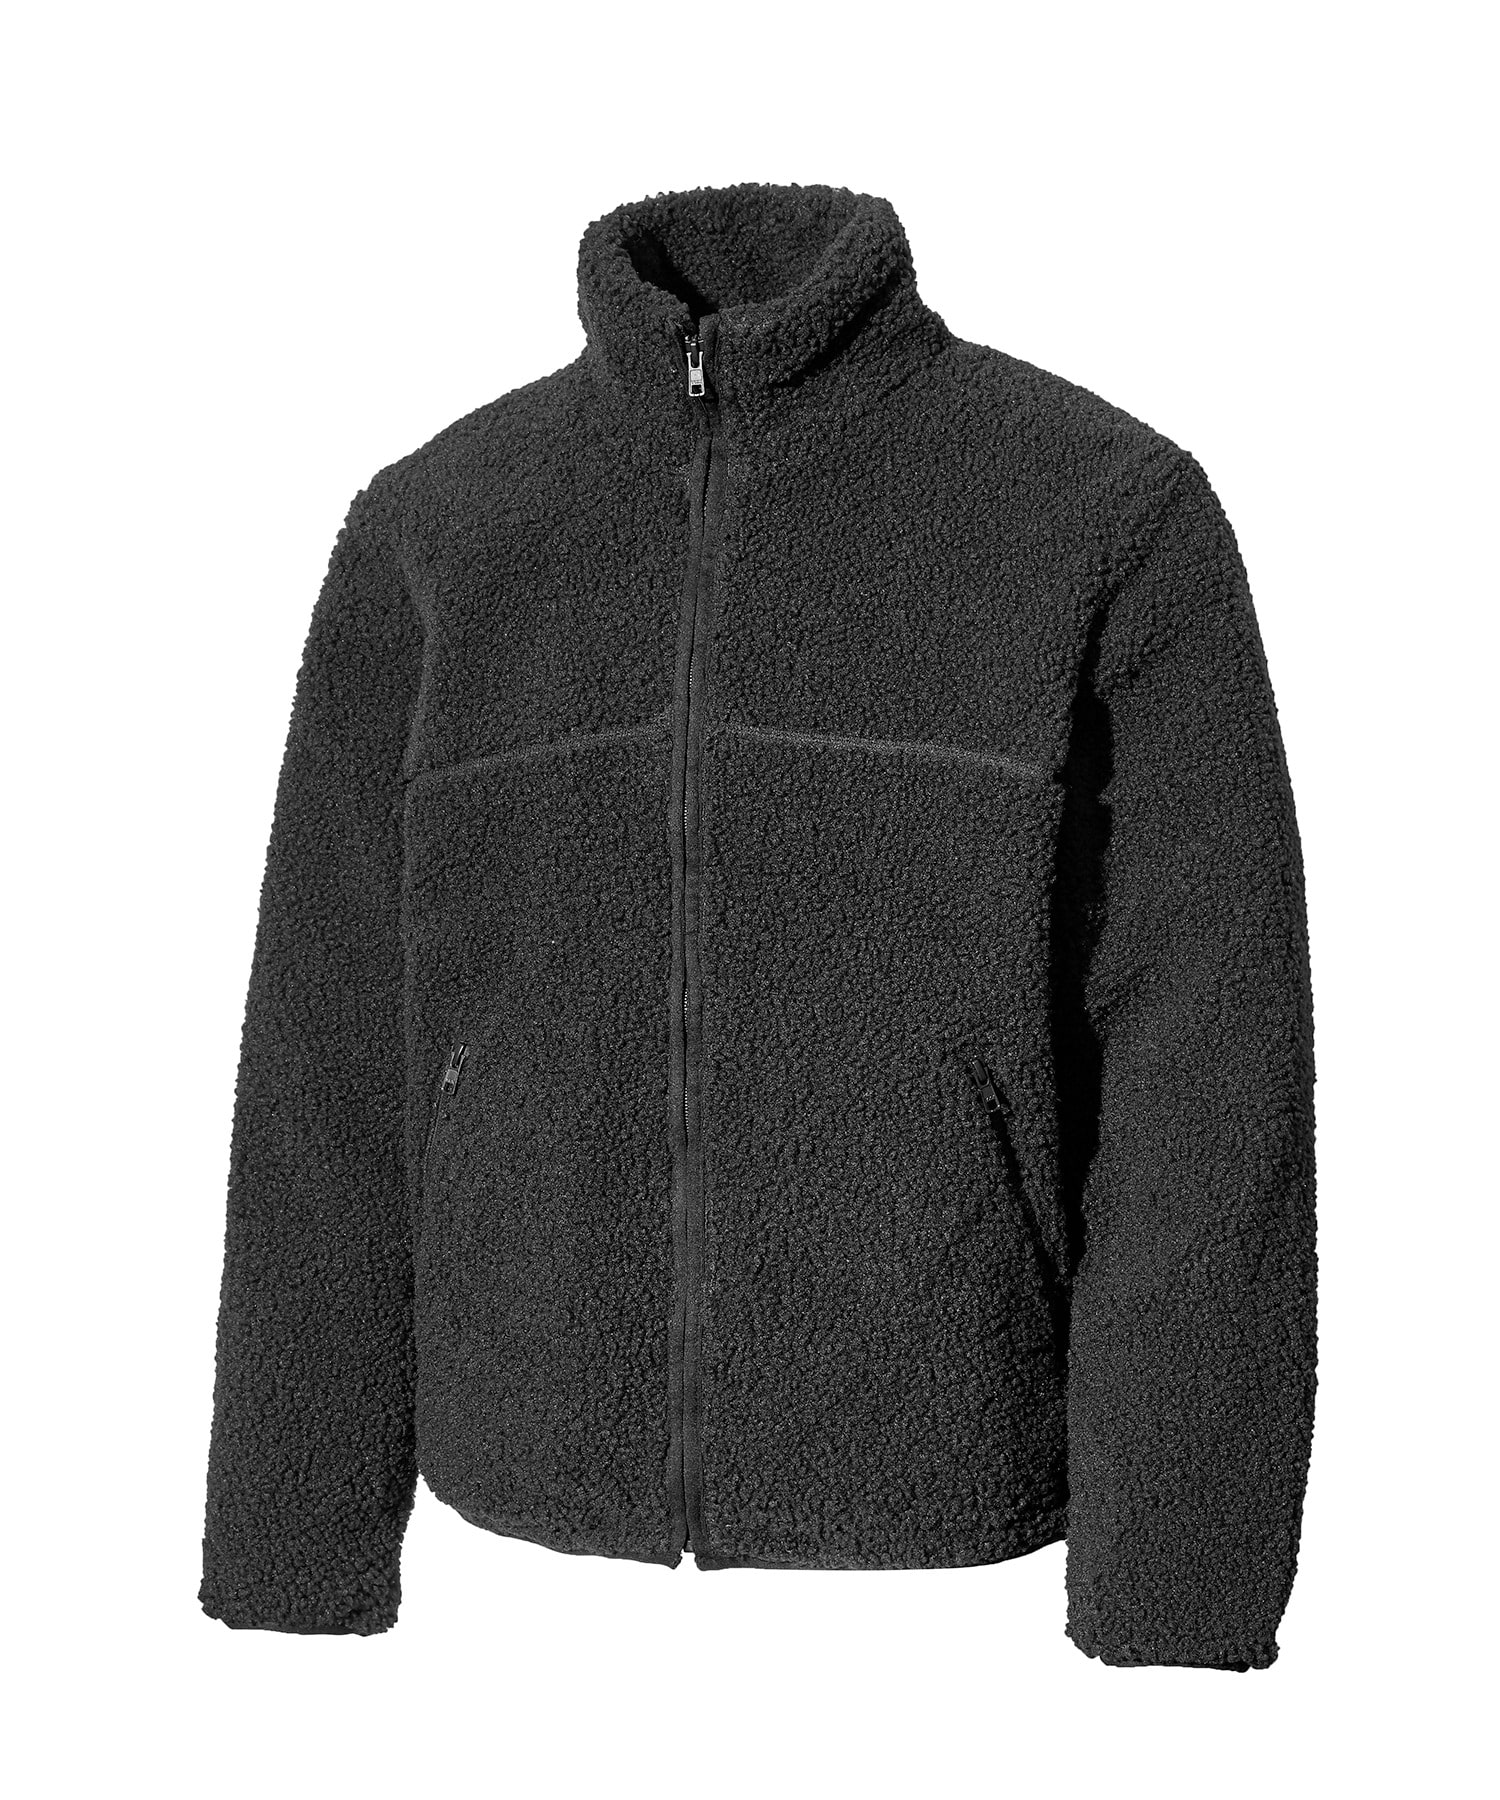 VASROCK,Bubble Fleece Zip-Up Jacket Charcoal